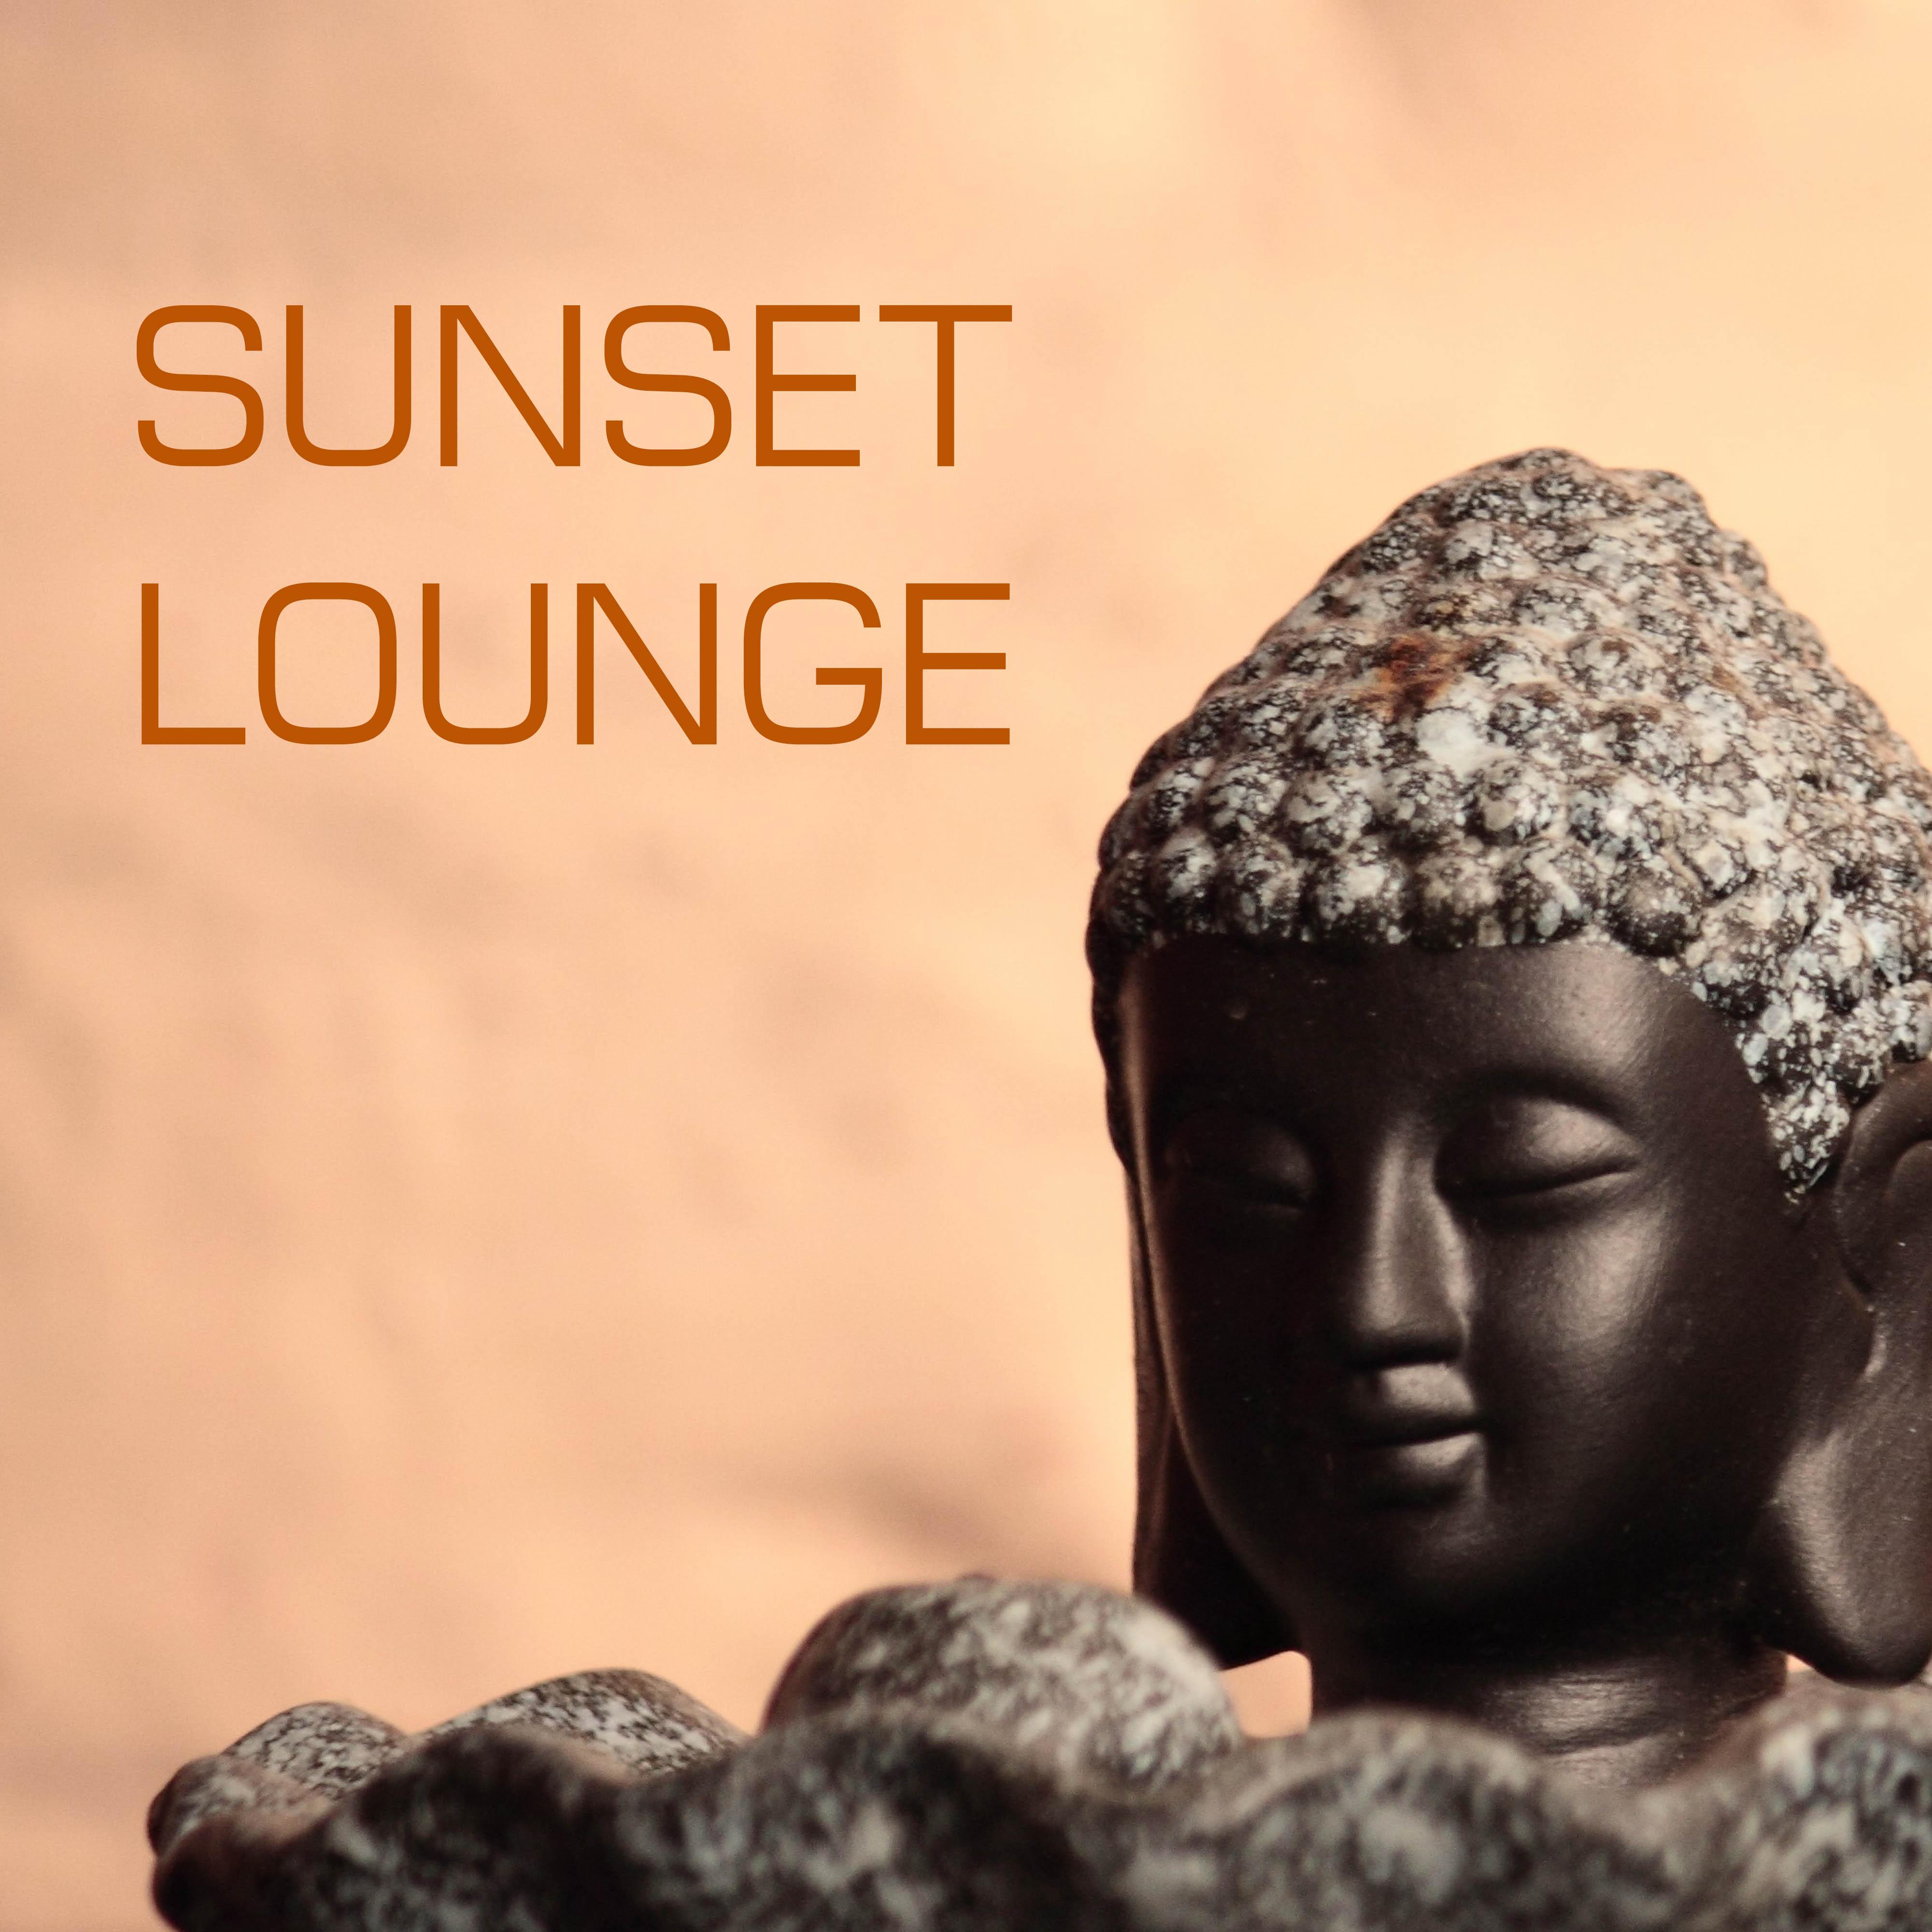 Buddha Sunset Lounge